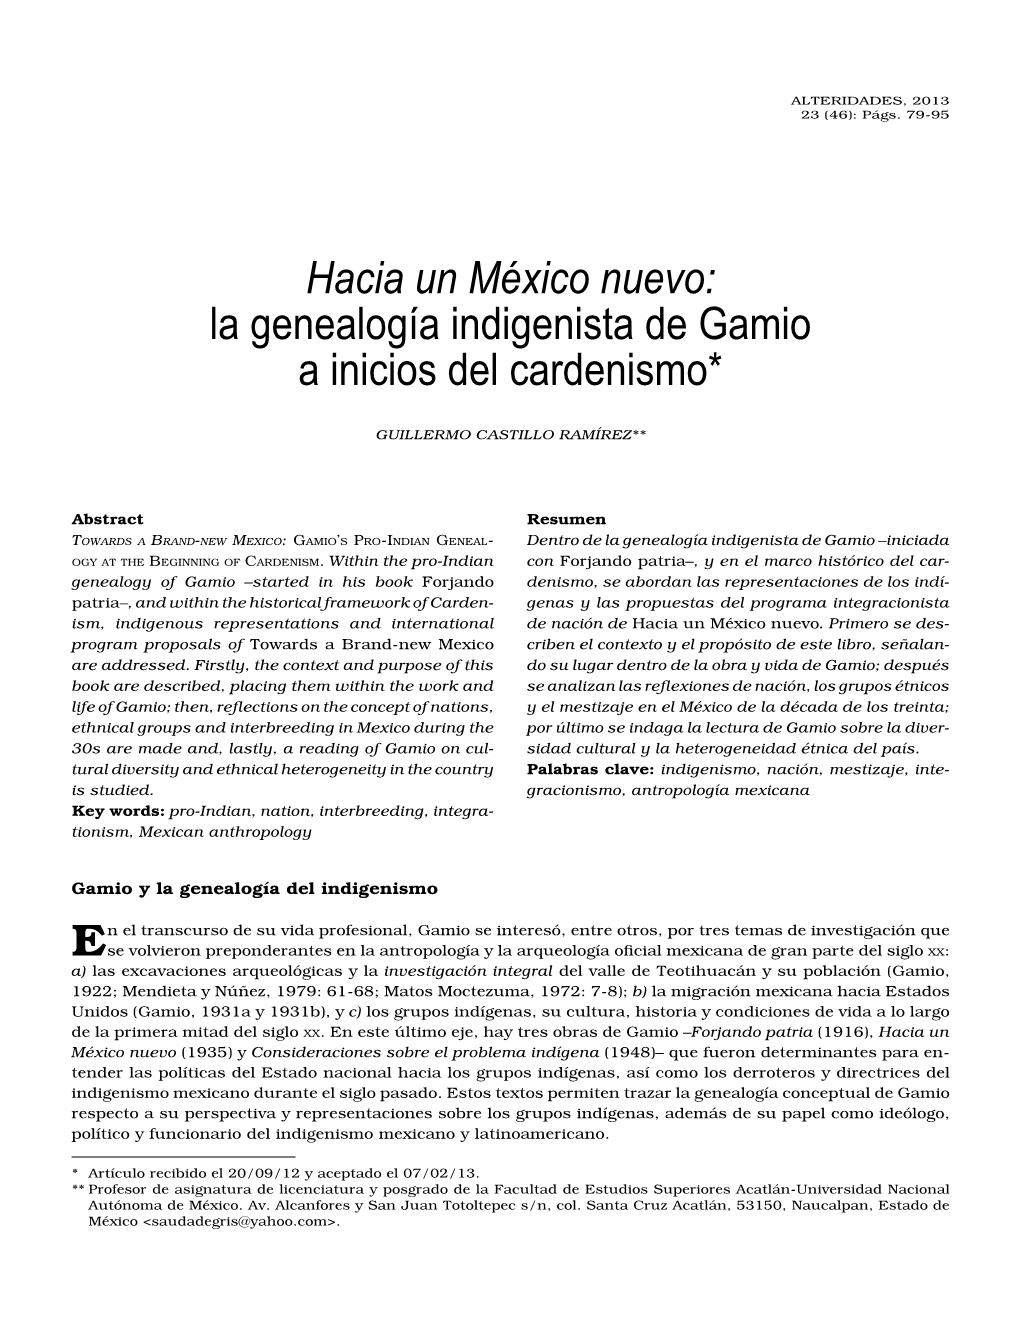 Hacia Un México Nuevo: La Genealogía Indigenista De Gamio a Inicios Del Cardenismo*